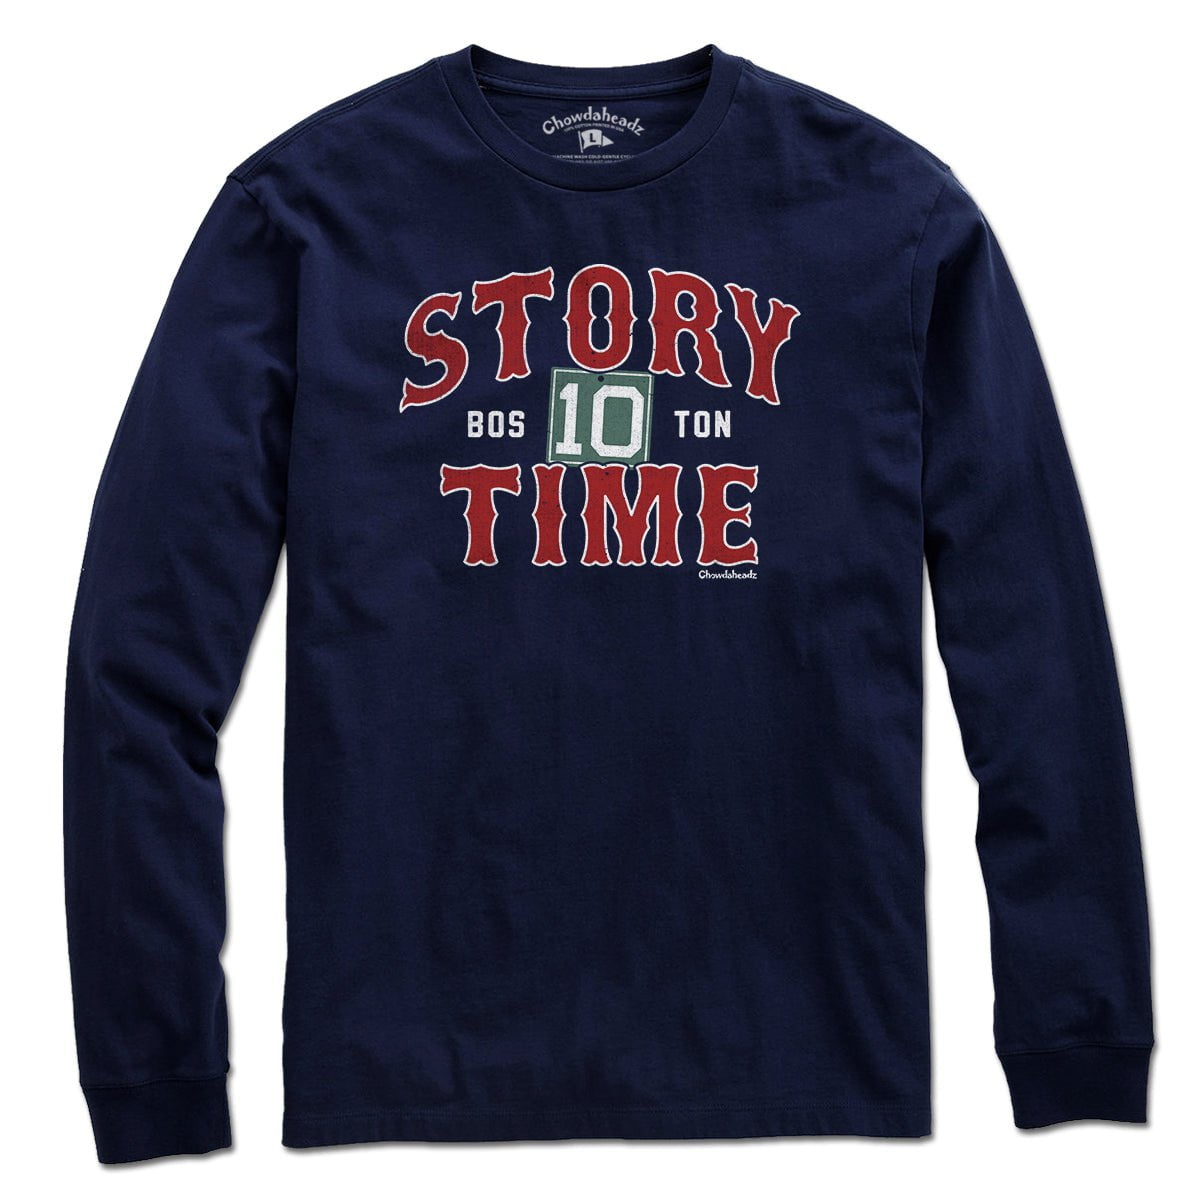 Story Time Boston Baseball T-Shirt - Chowdaheadz